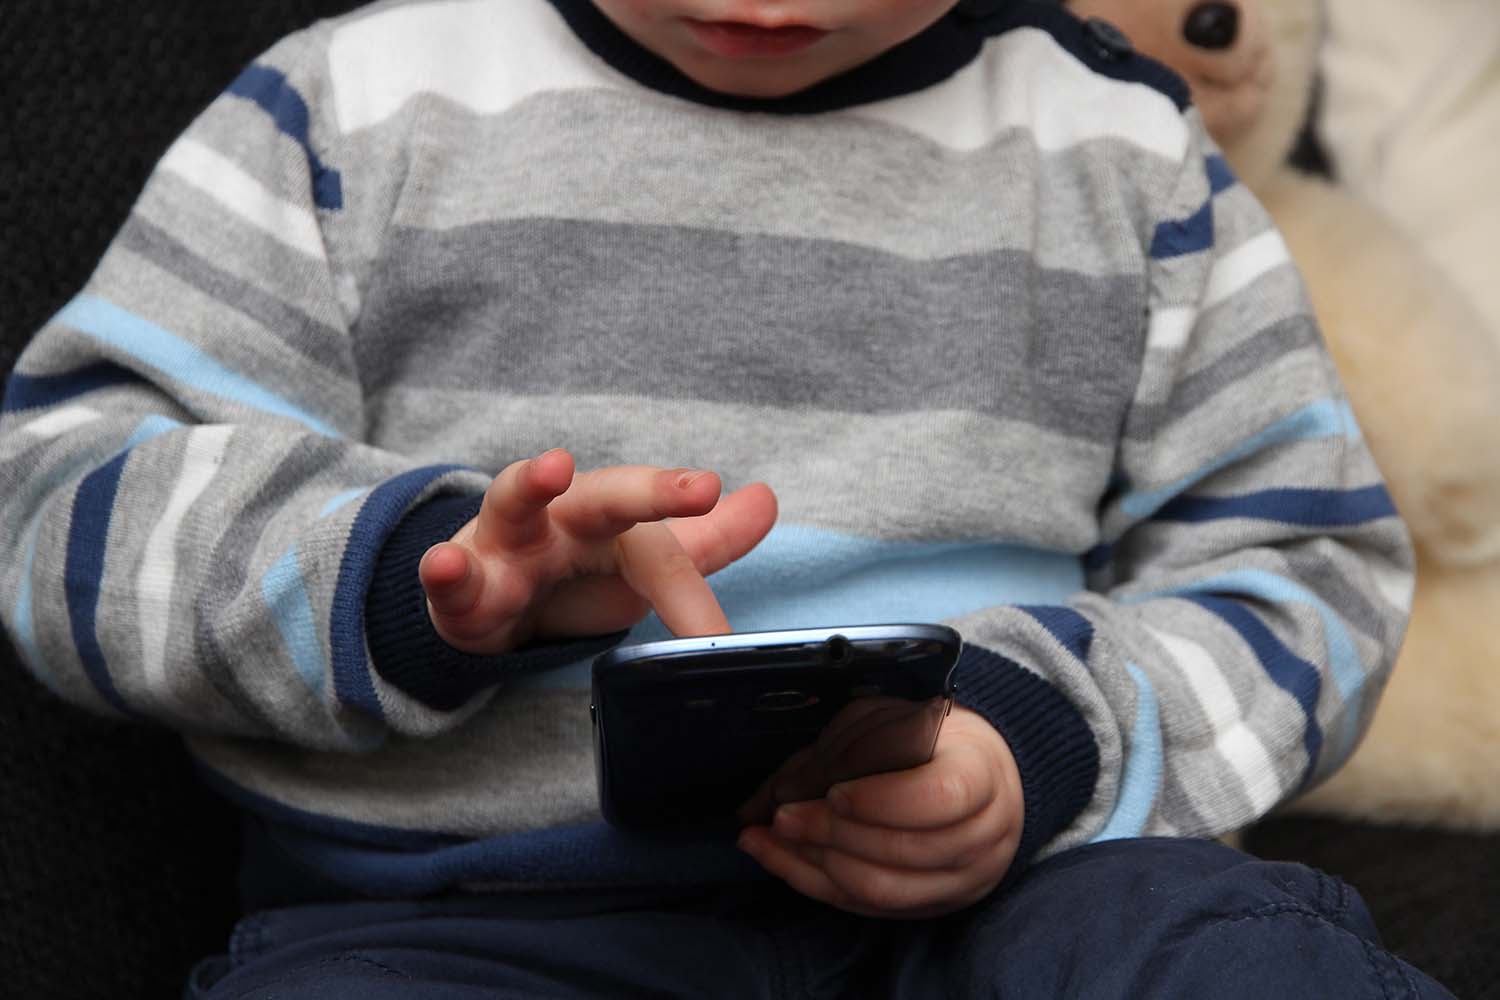 Maximal eine Stunde Internet am Tag – so lautet oft der Versuch der Eltern, ihre Kinder vor zu viel digitalem Konsum zu schützen. Reine zeitliche Begrenzungen sind nicht sinnvoll, meint Dr. Isabel Brandhorst, die auf mögliche Stellschrauben aufmerksam macht.